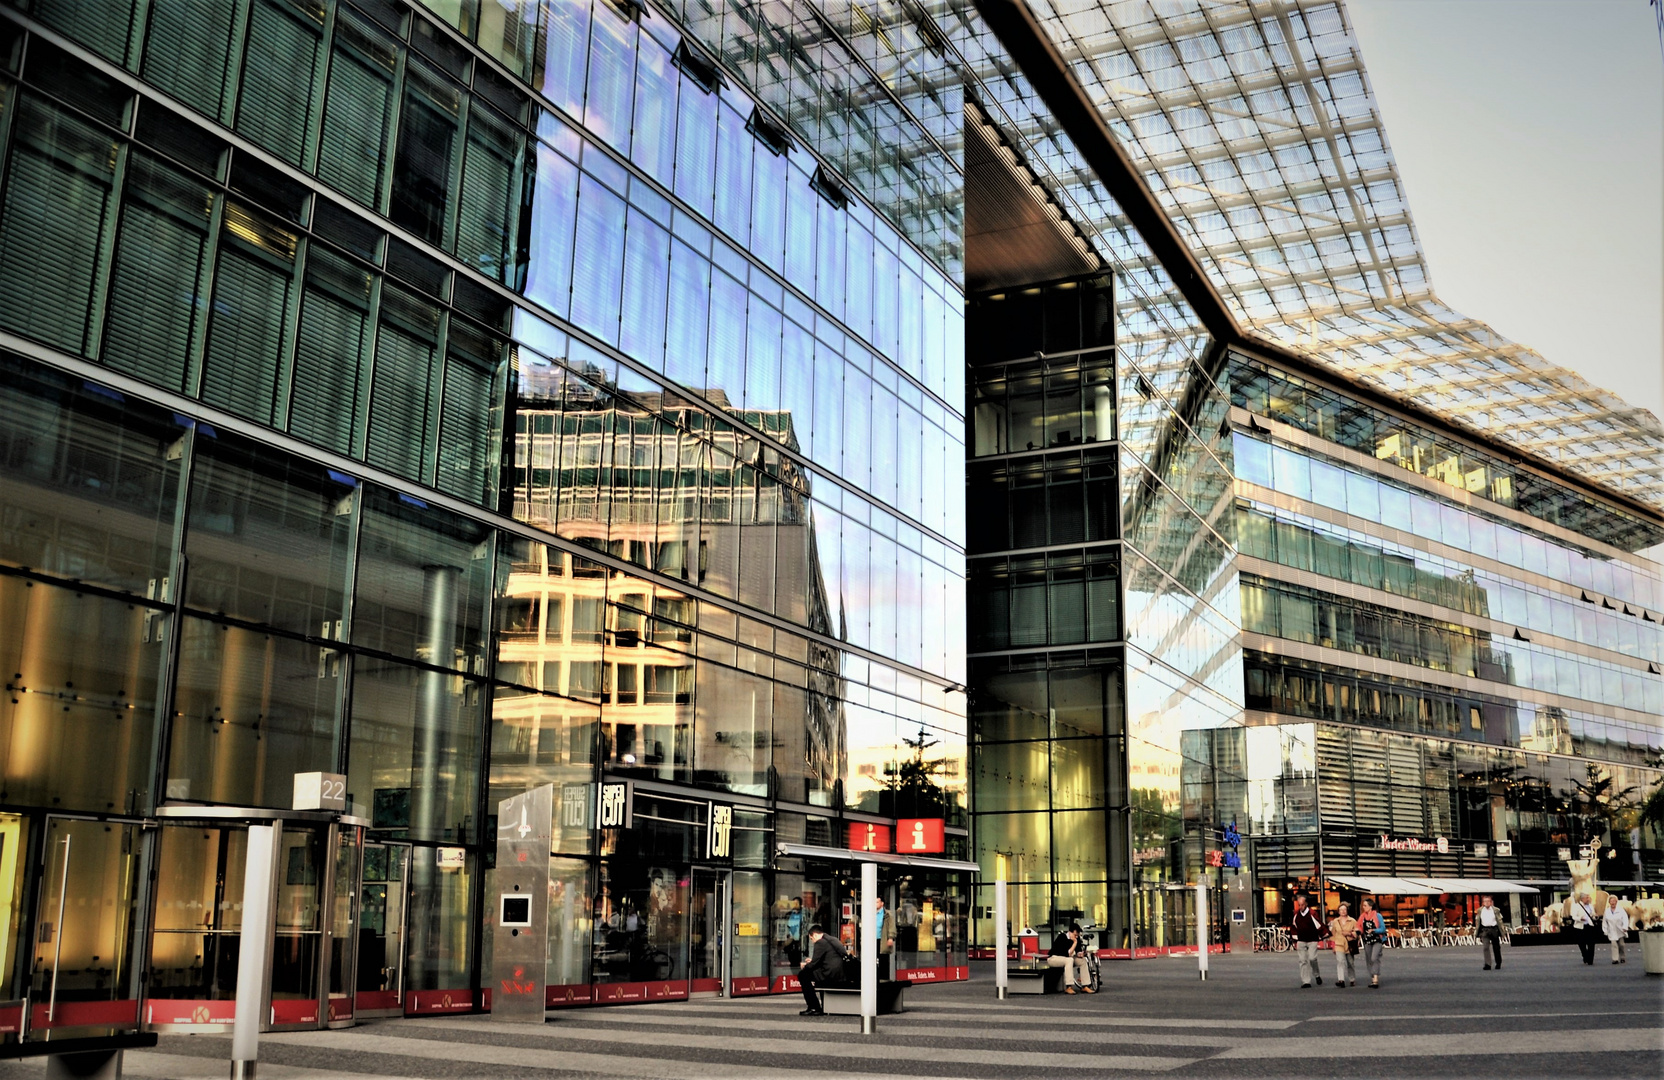 Spiegelung in der Glasfassade eines Einkaufscenters in  Berlin.